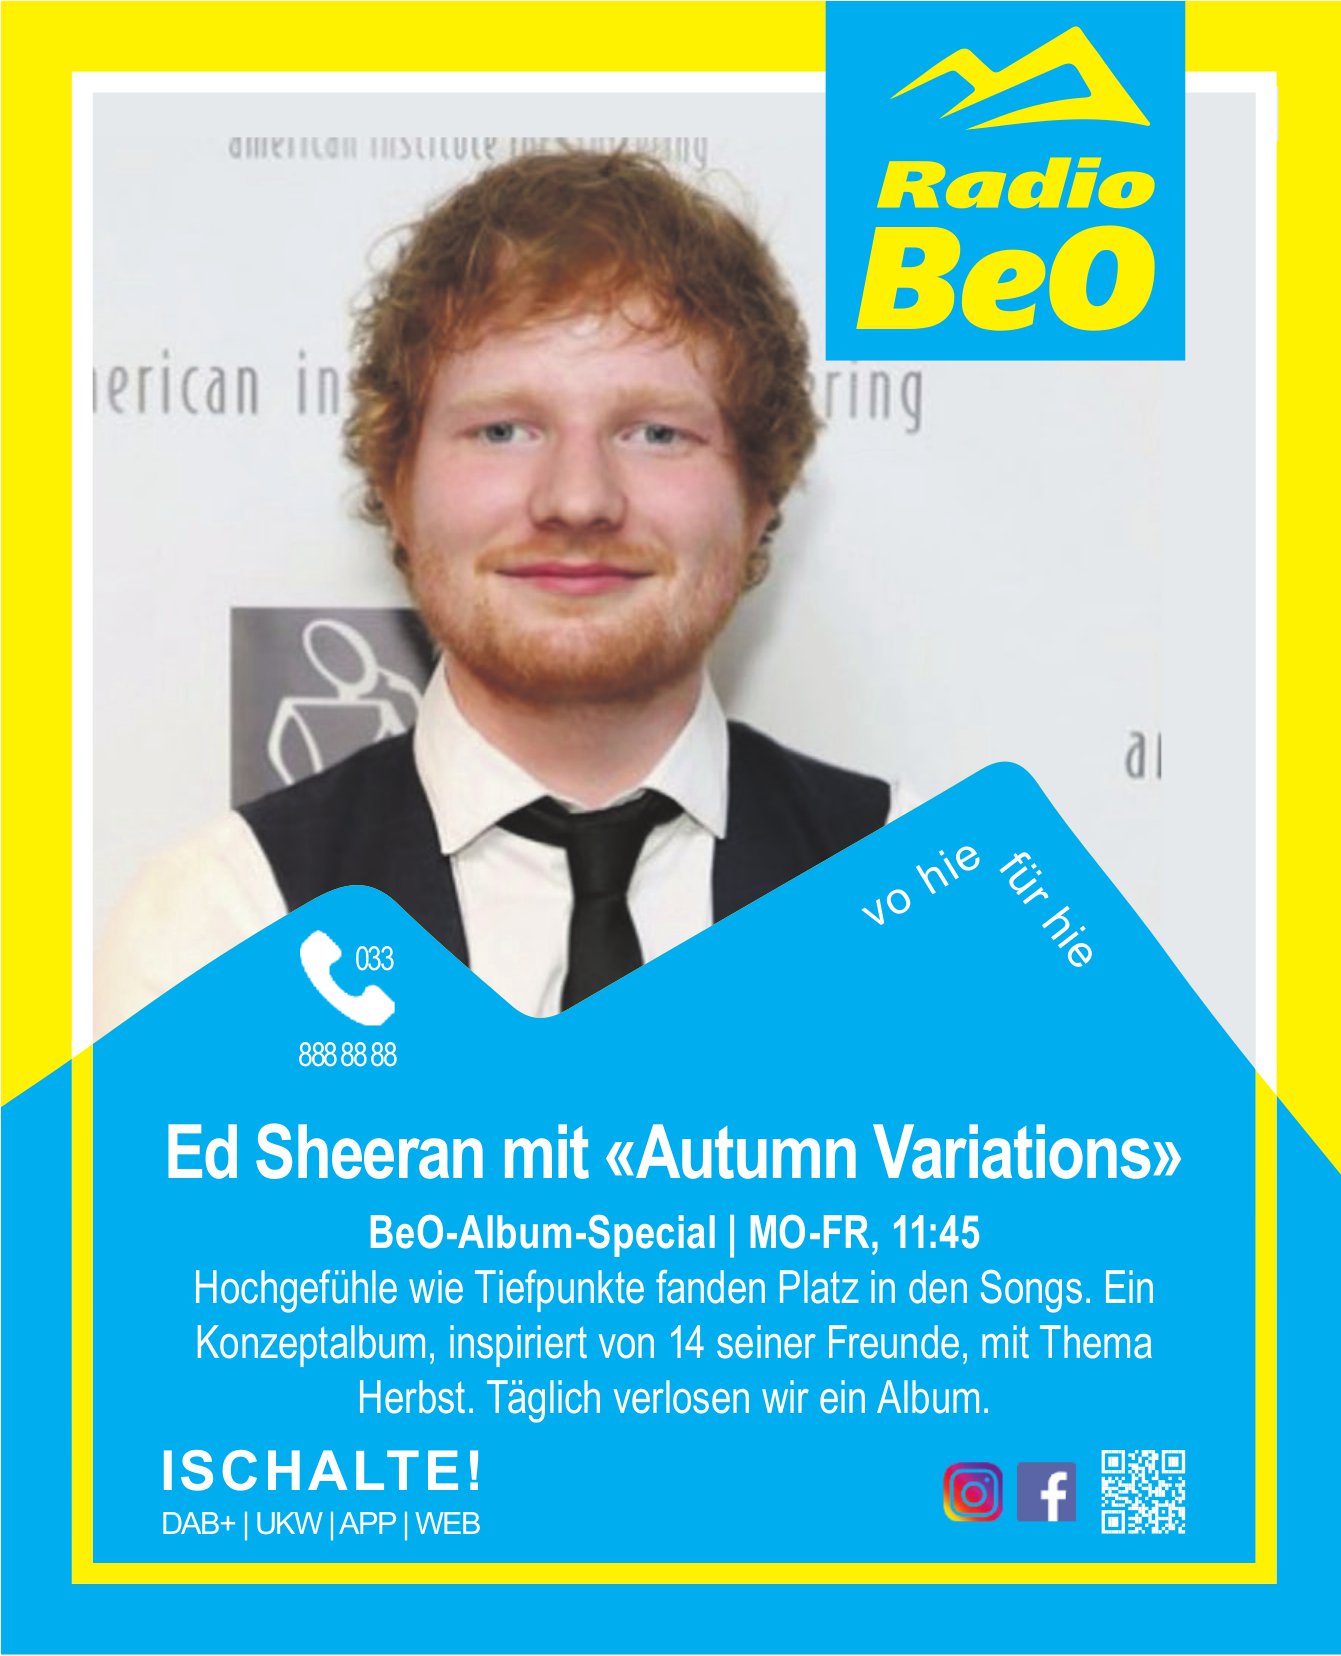 Radio BeO - BeO-Album-Special: Ed Sheeran mit «Autumn Variations»